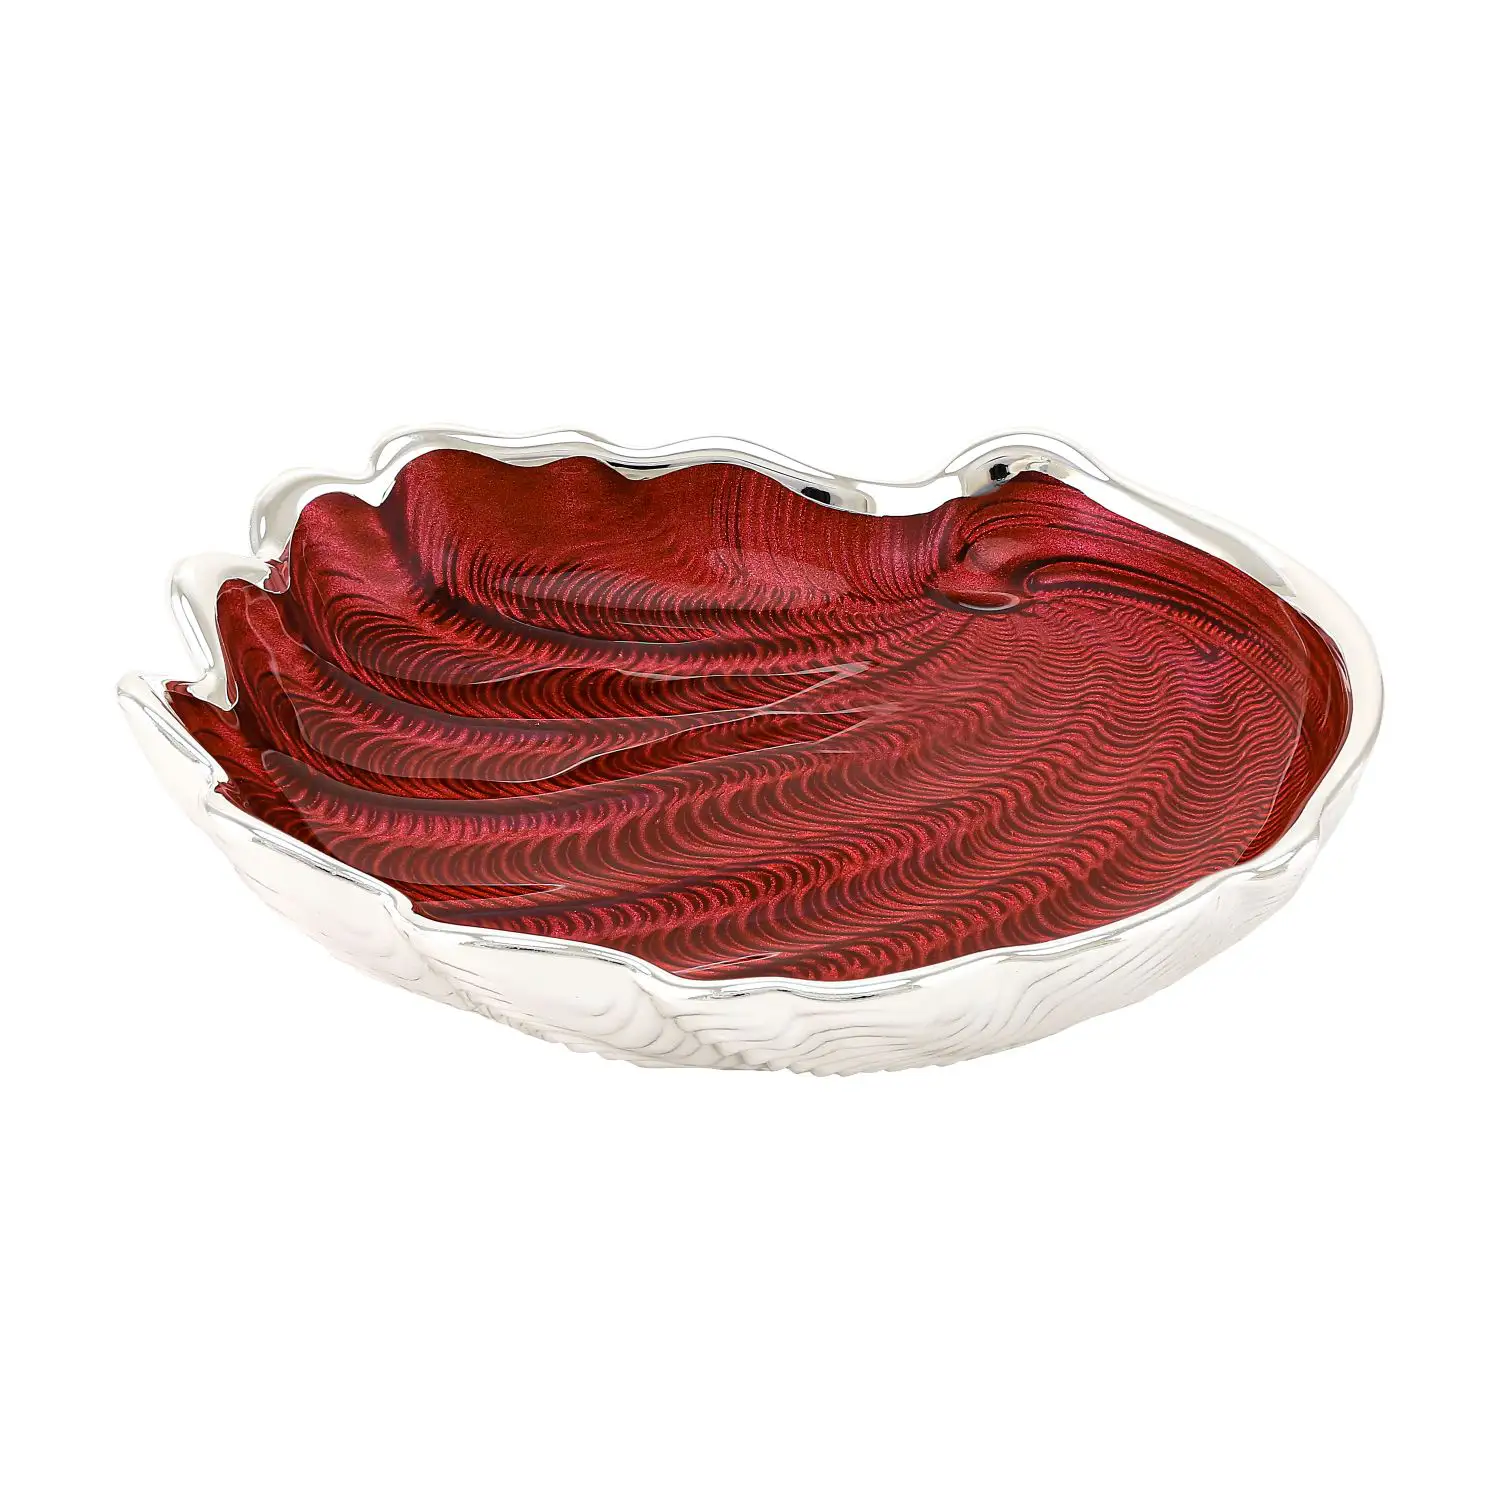 Тарелка стеклянная CONCHIGLIA (цвет красный) диаметр 15 см тарелка стеклянная conchiglia цвет песочный диаметр 15 см